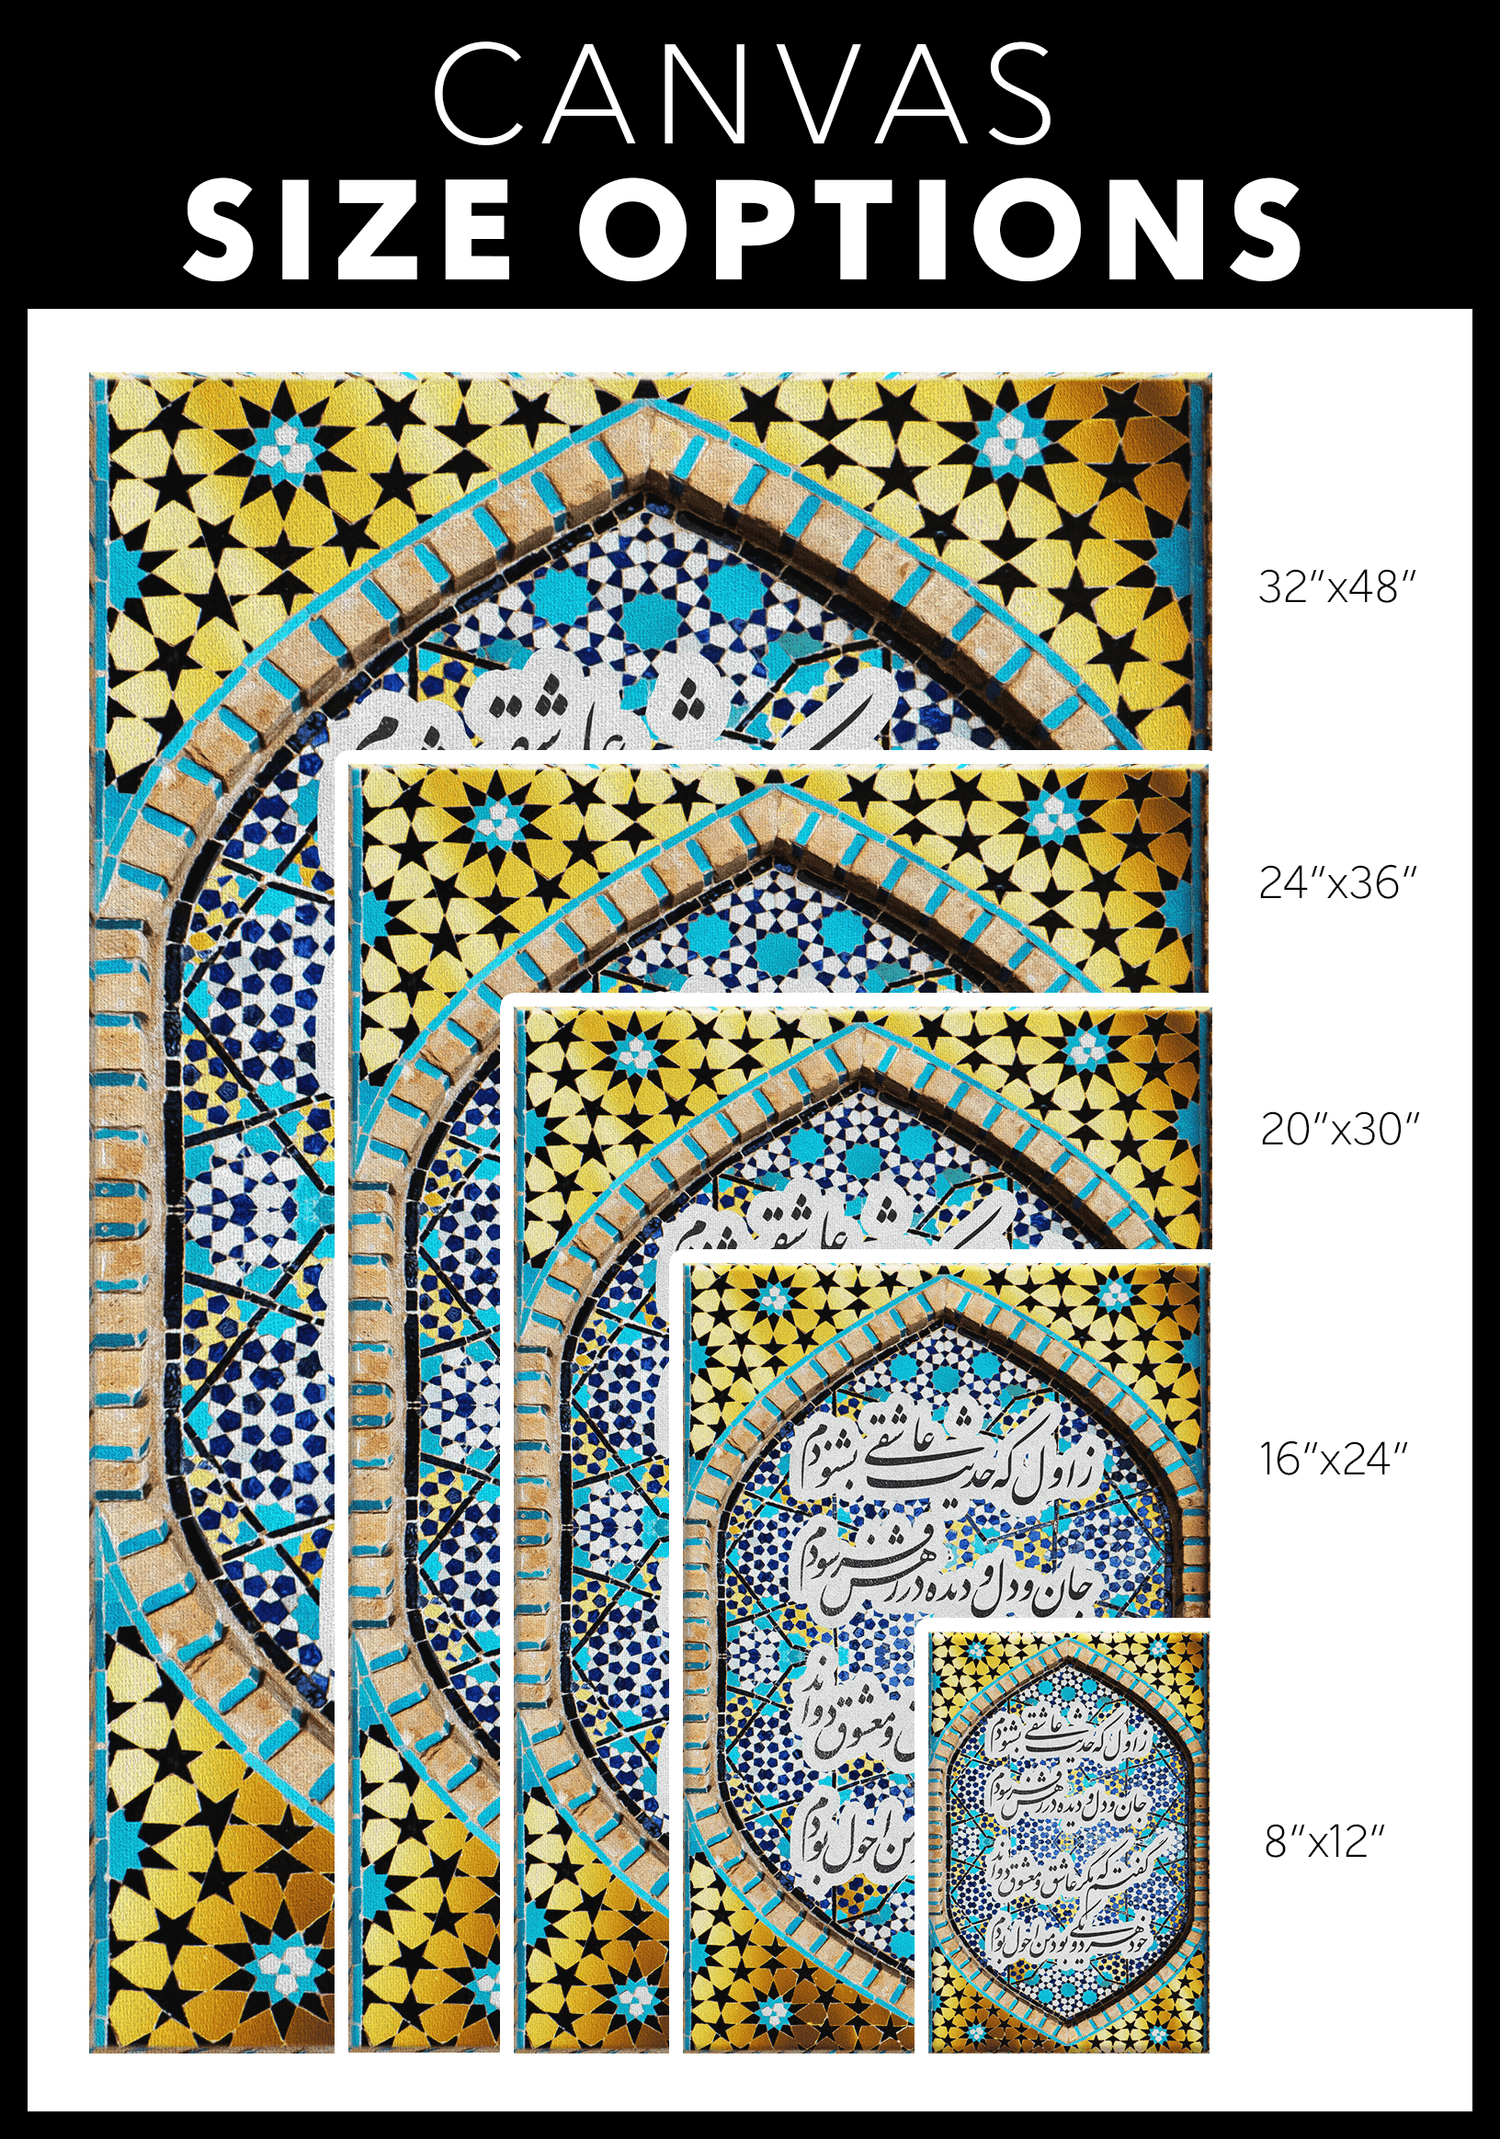 My First Love Story | Persian Wall Art | Persian Home Wall Decor - ORIAVI Persian Art, persian artwork for sale, persian calligraphy, persian calligraphy wall art, persian mix media wall art, persian painting, persian wall art